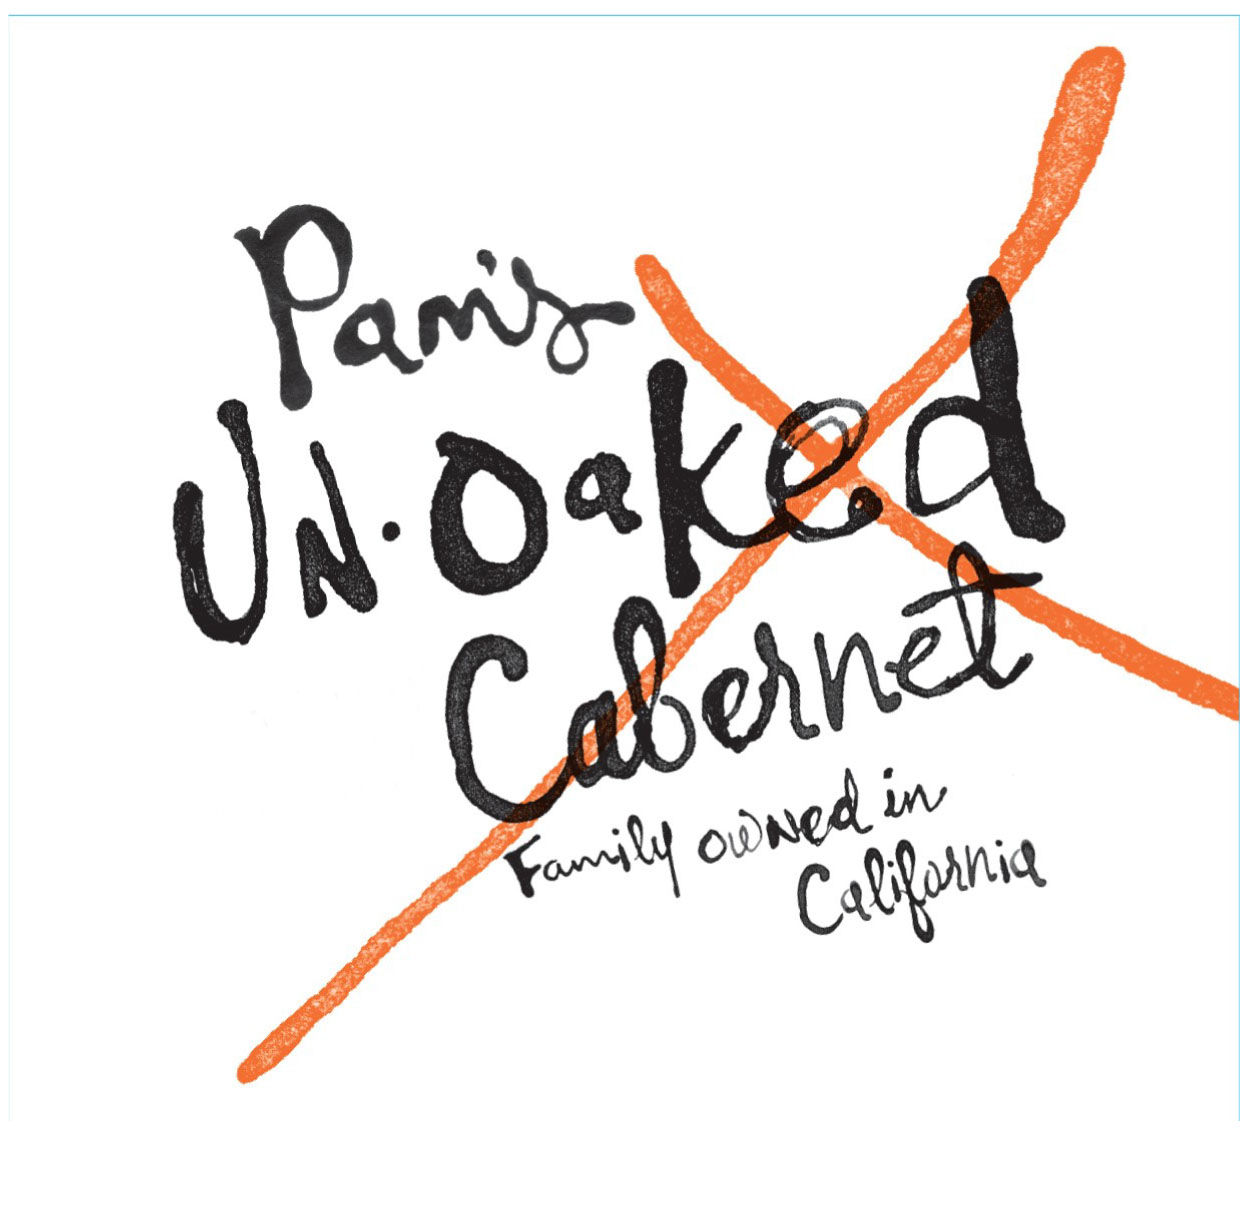 Pam's Un - Oaked Cabernet label